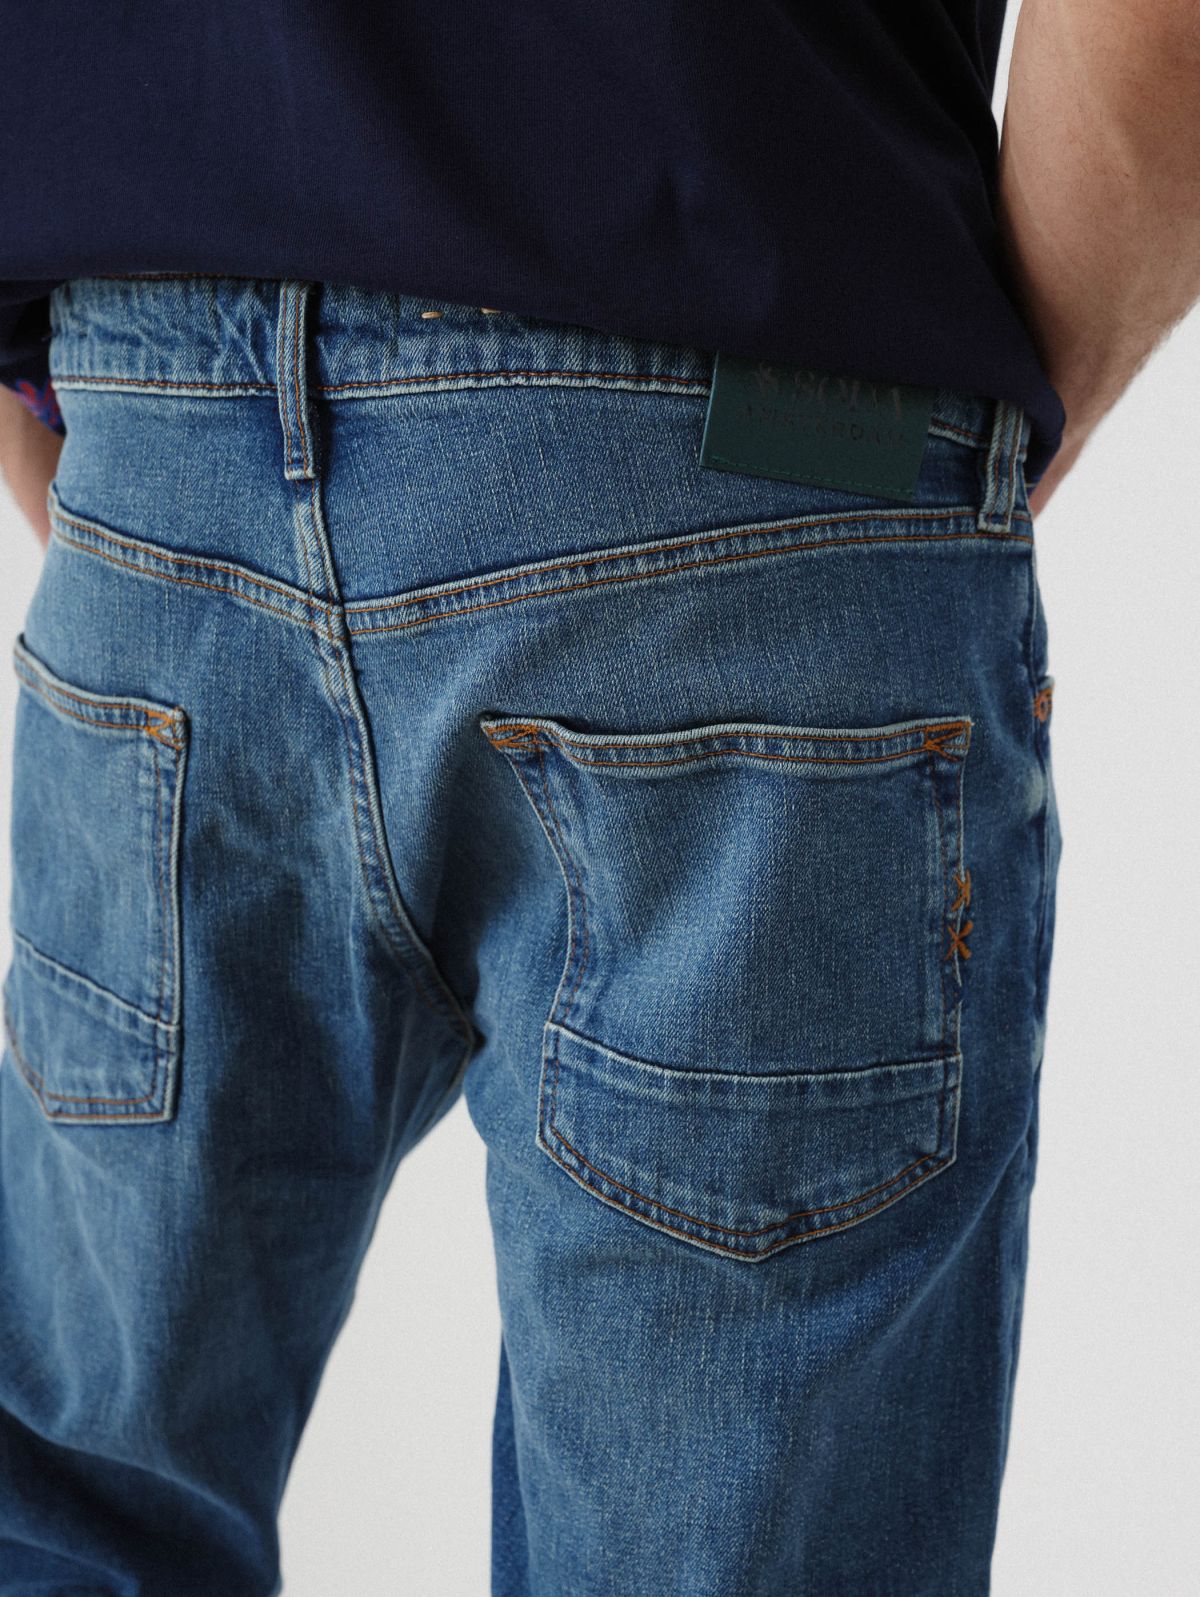  מכנסי ג'ינס בגזרה ישרה של SCOTCH & SODA